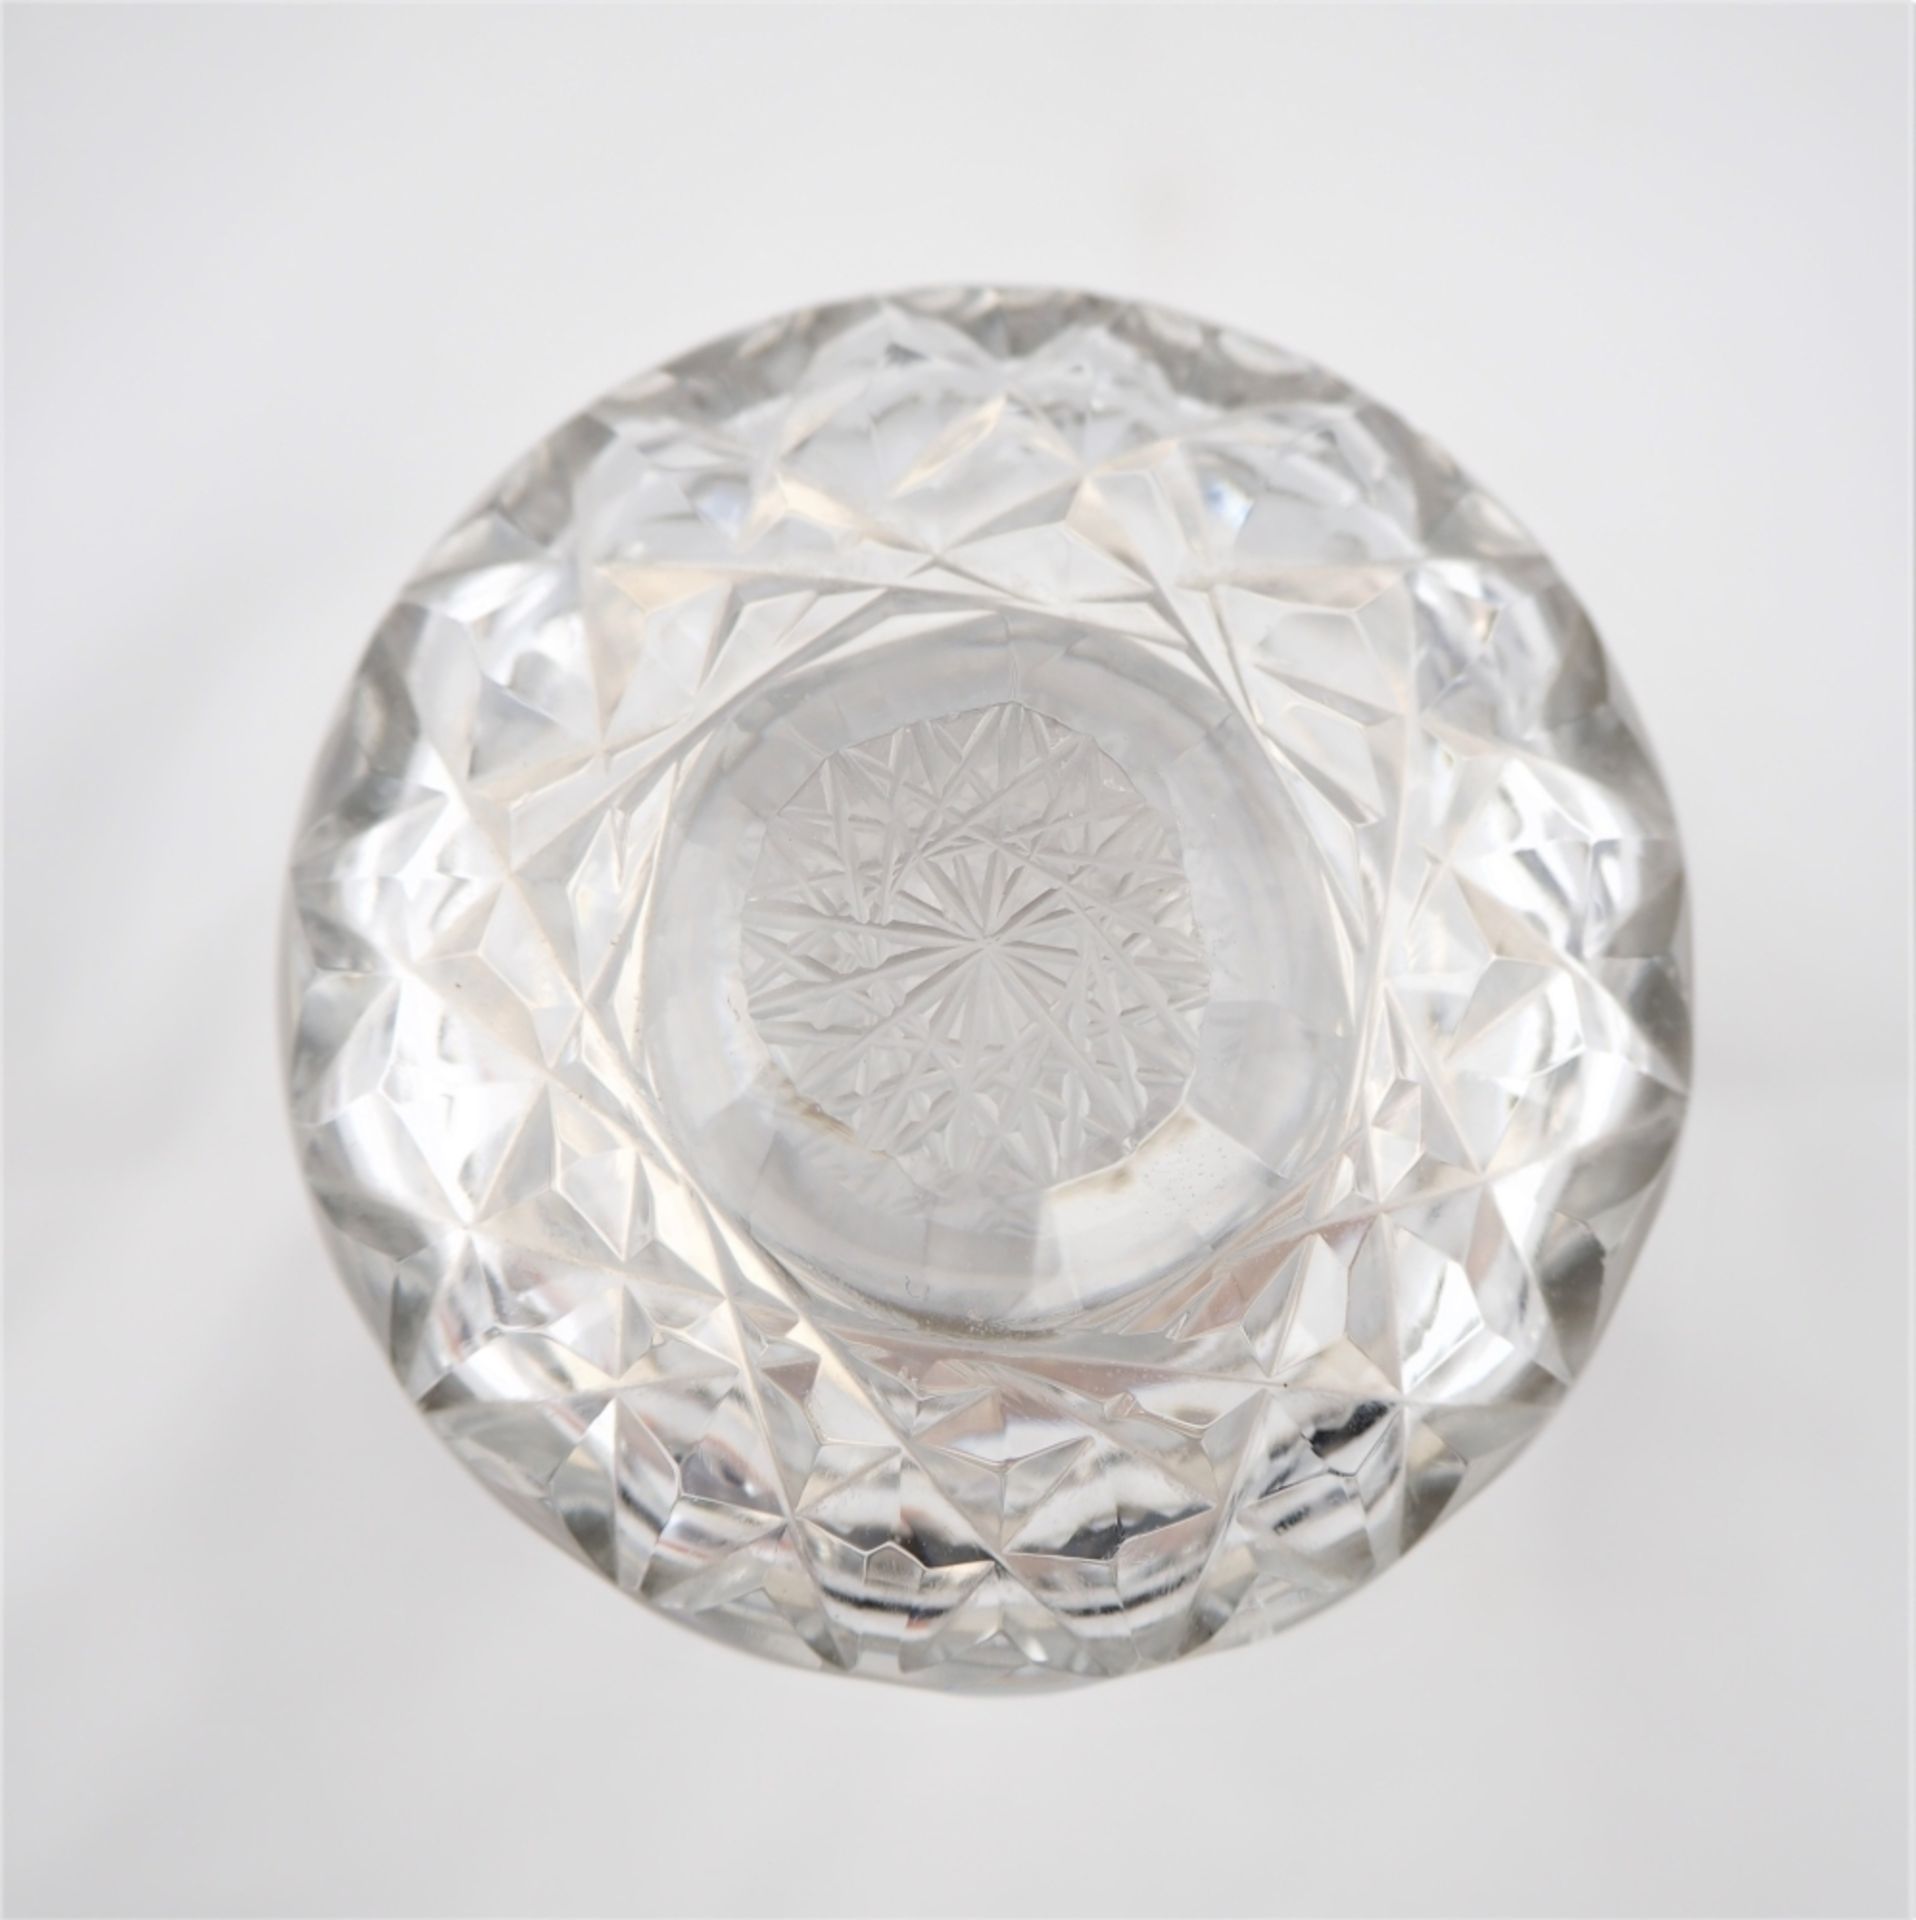 Kristallglaskaraffegeschliffen, am Boden sternförmig, mit Silbermontur (nicht geprüft, P - Bild 3 aus 3